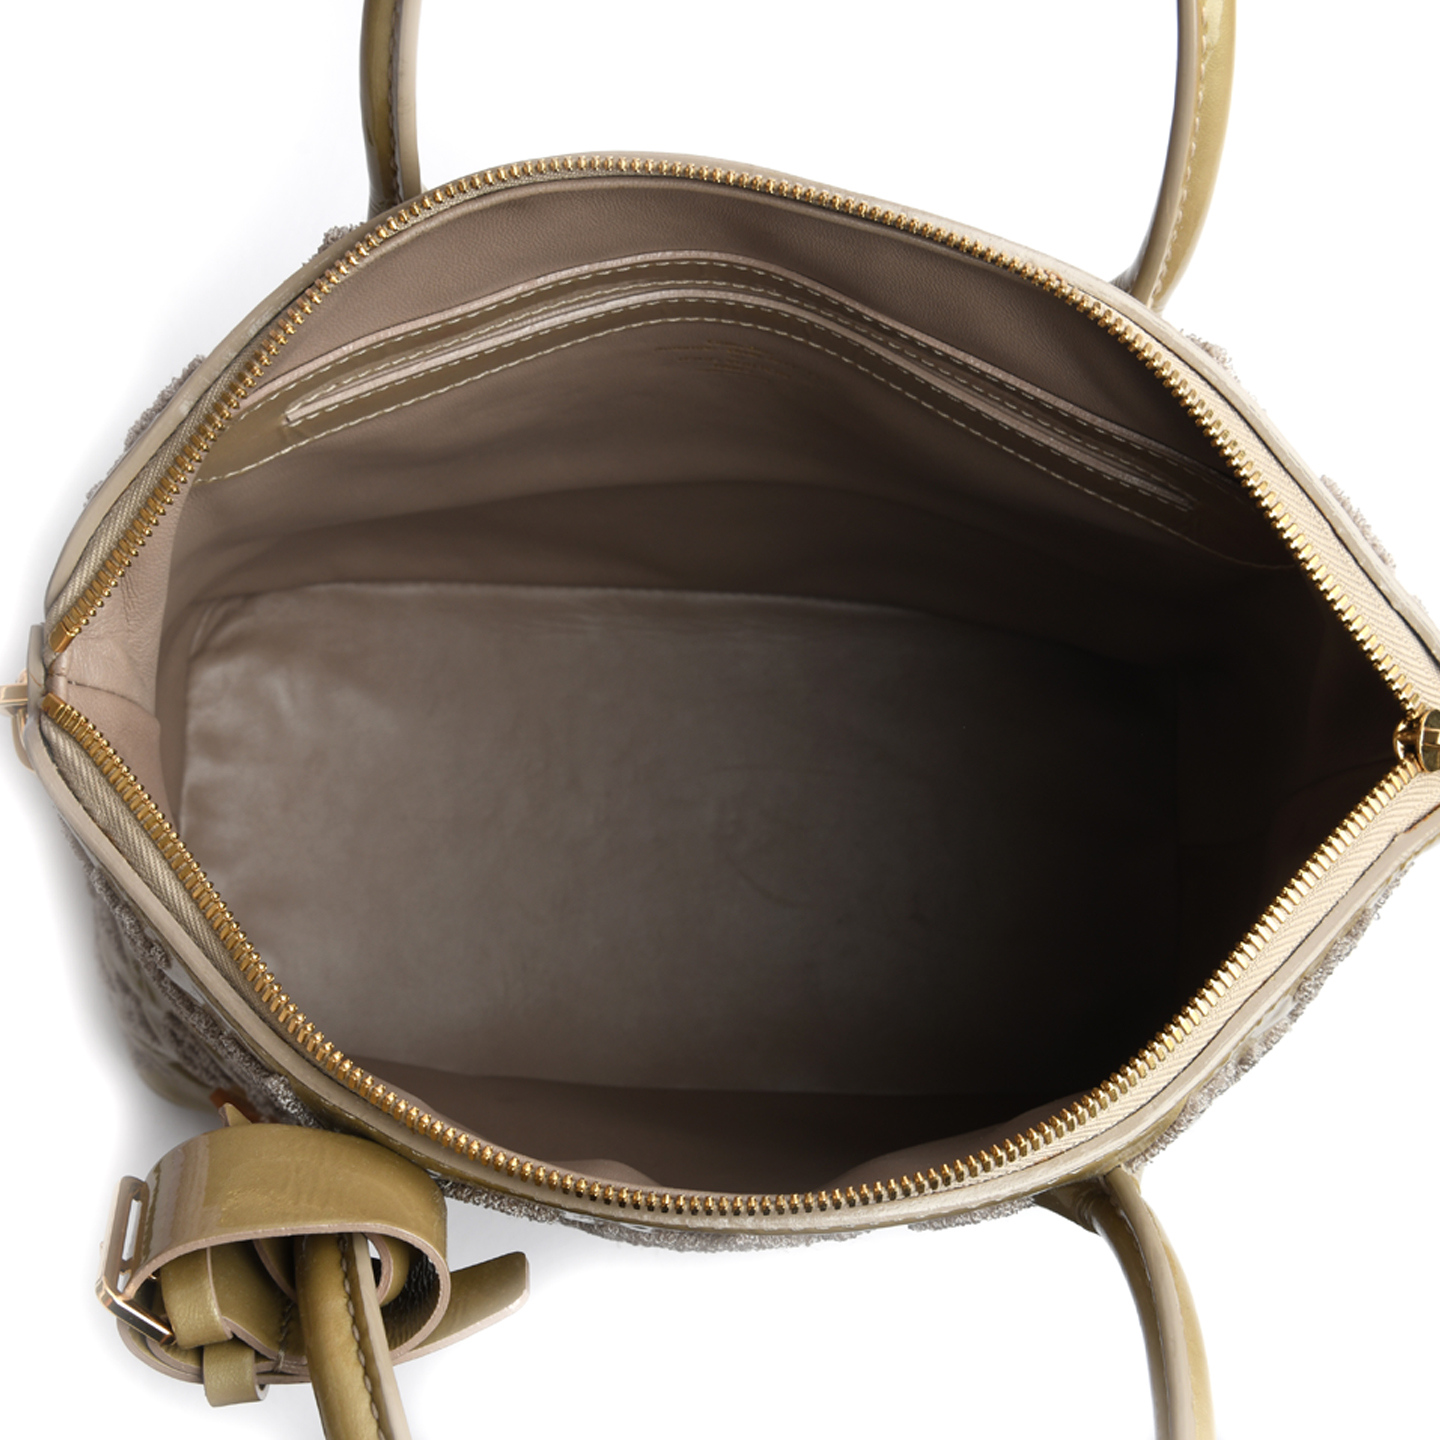 Louis Vuitton Monogram Fascination Lockit Bag worn by Blair